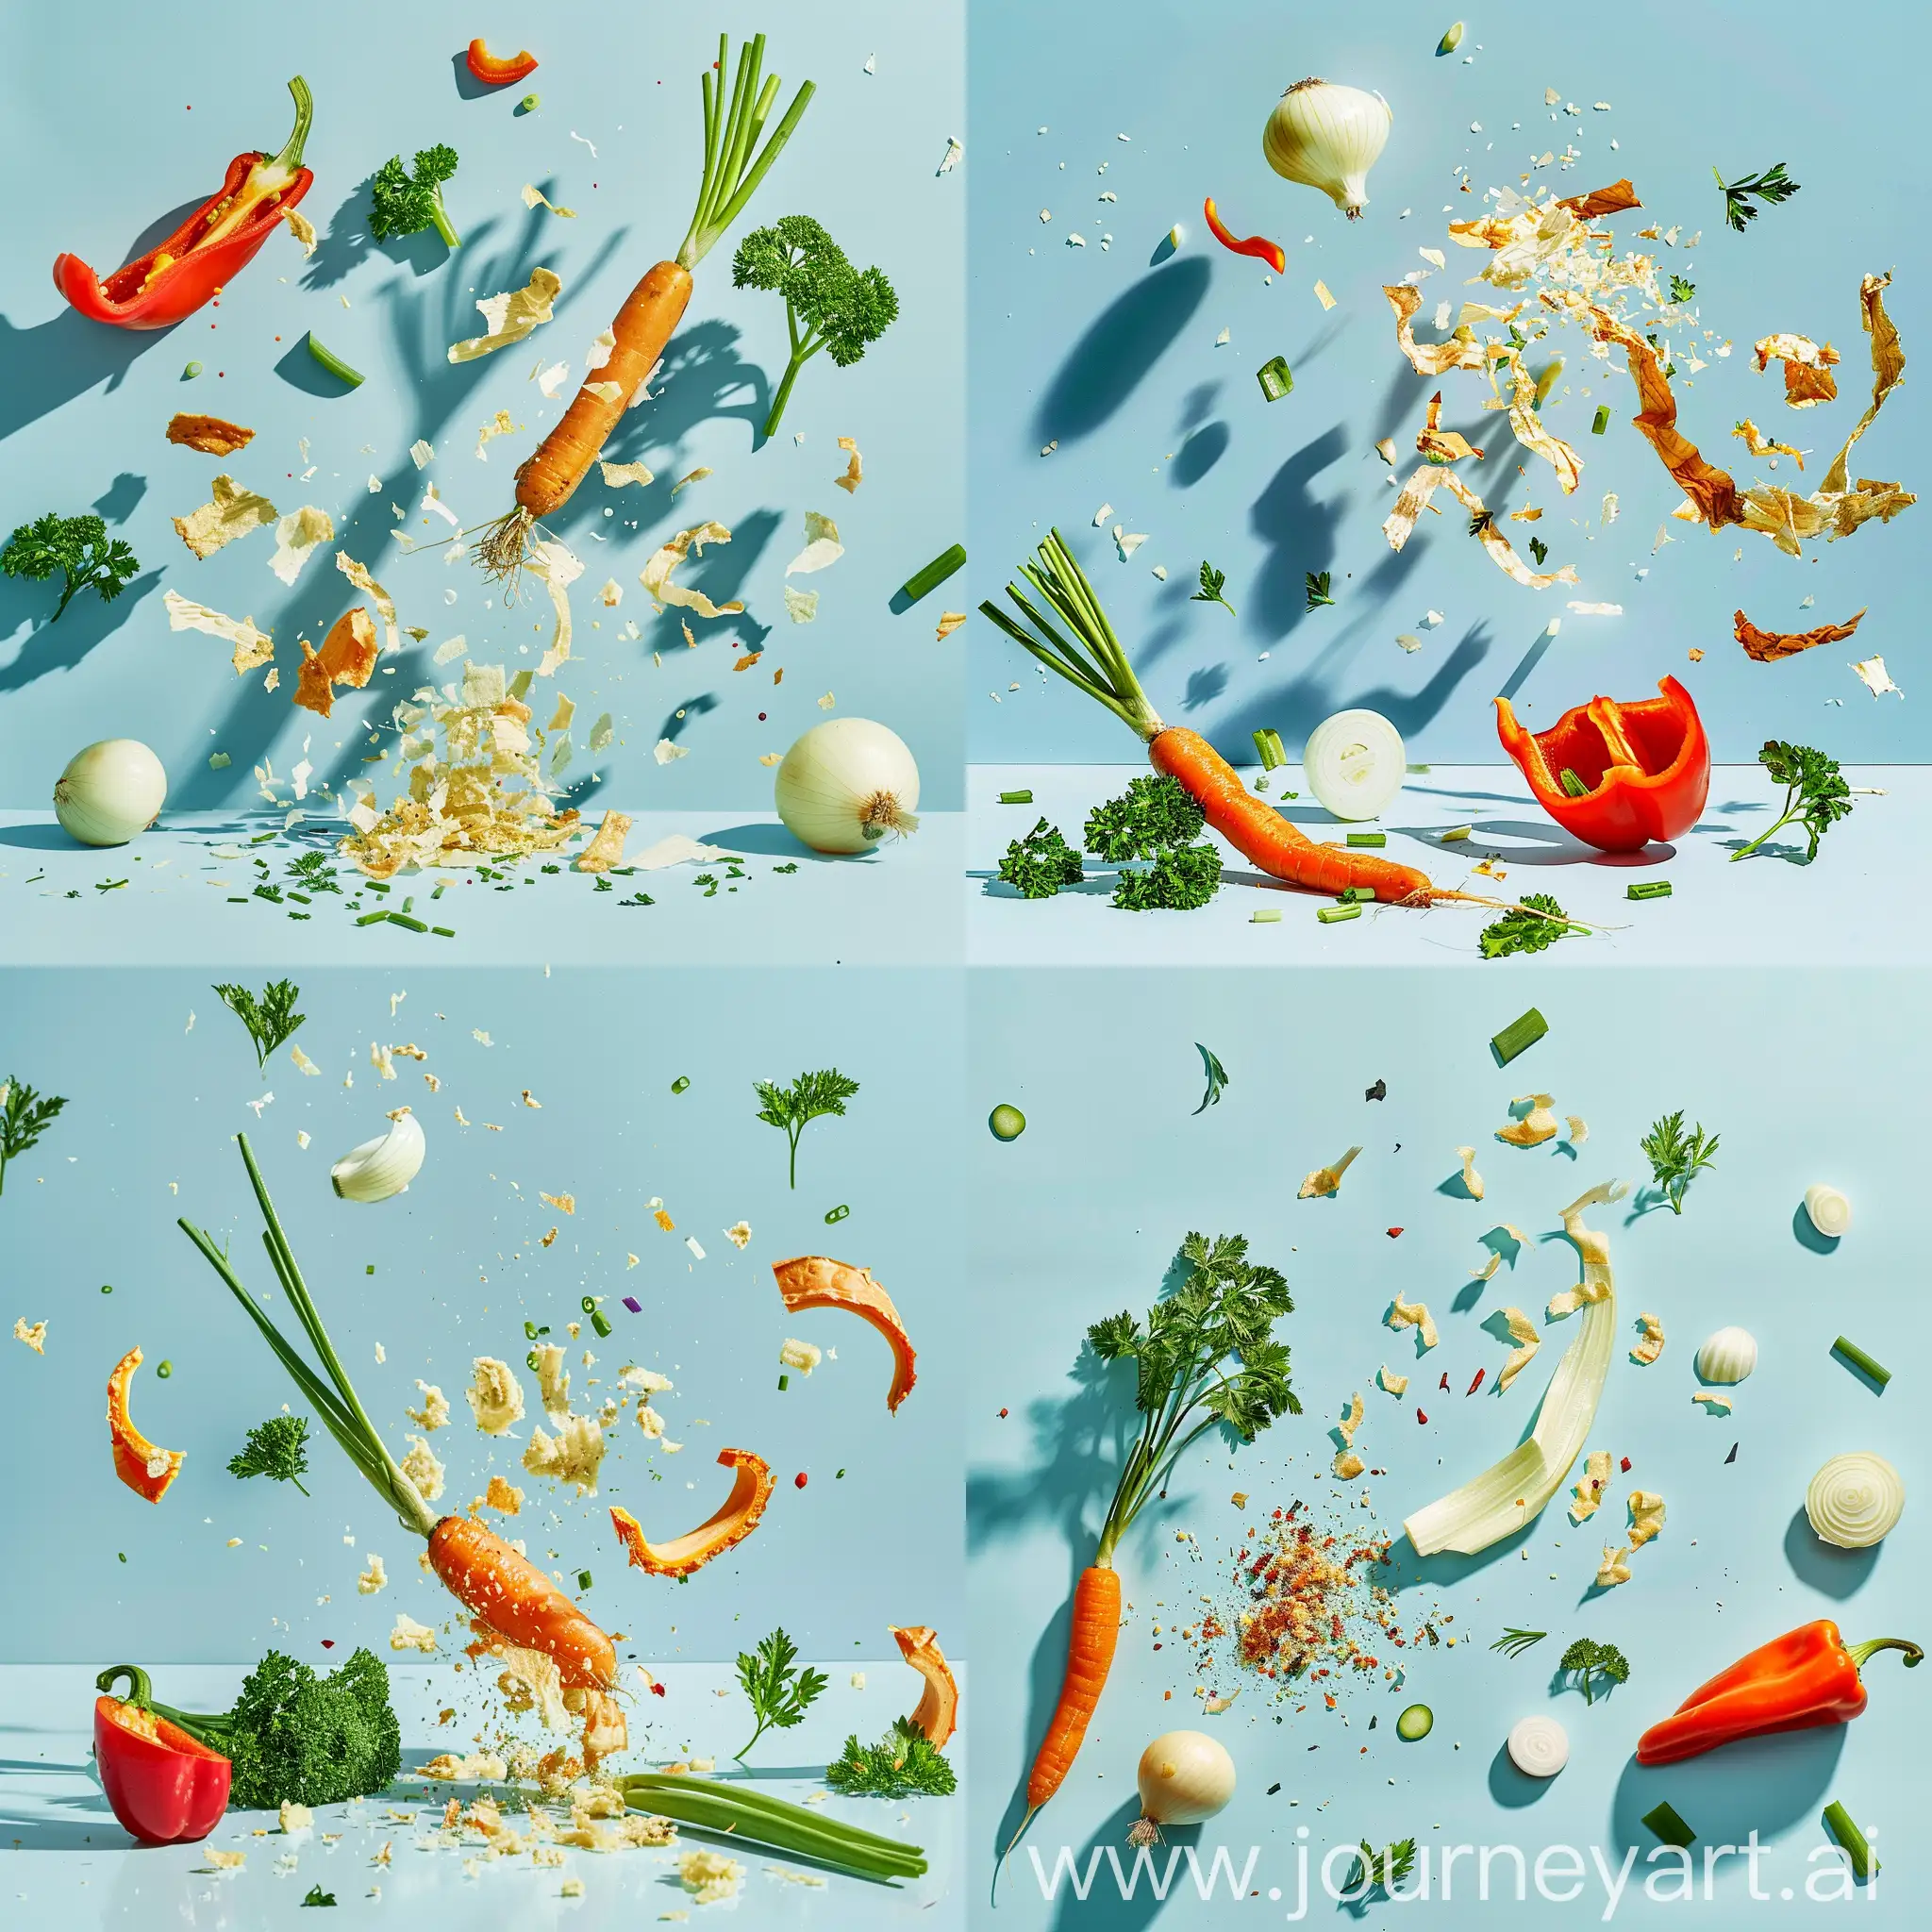 Vibrant-Still-Life-of-Fresh-Vegetables-Exploding-in-Motion